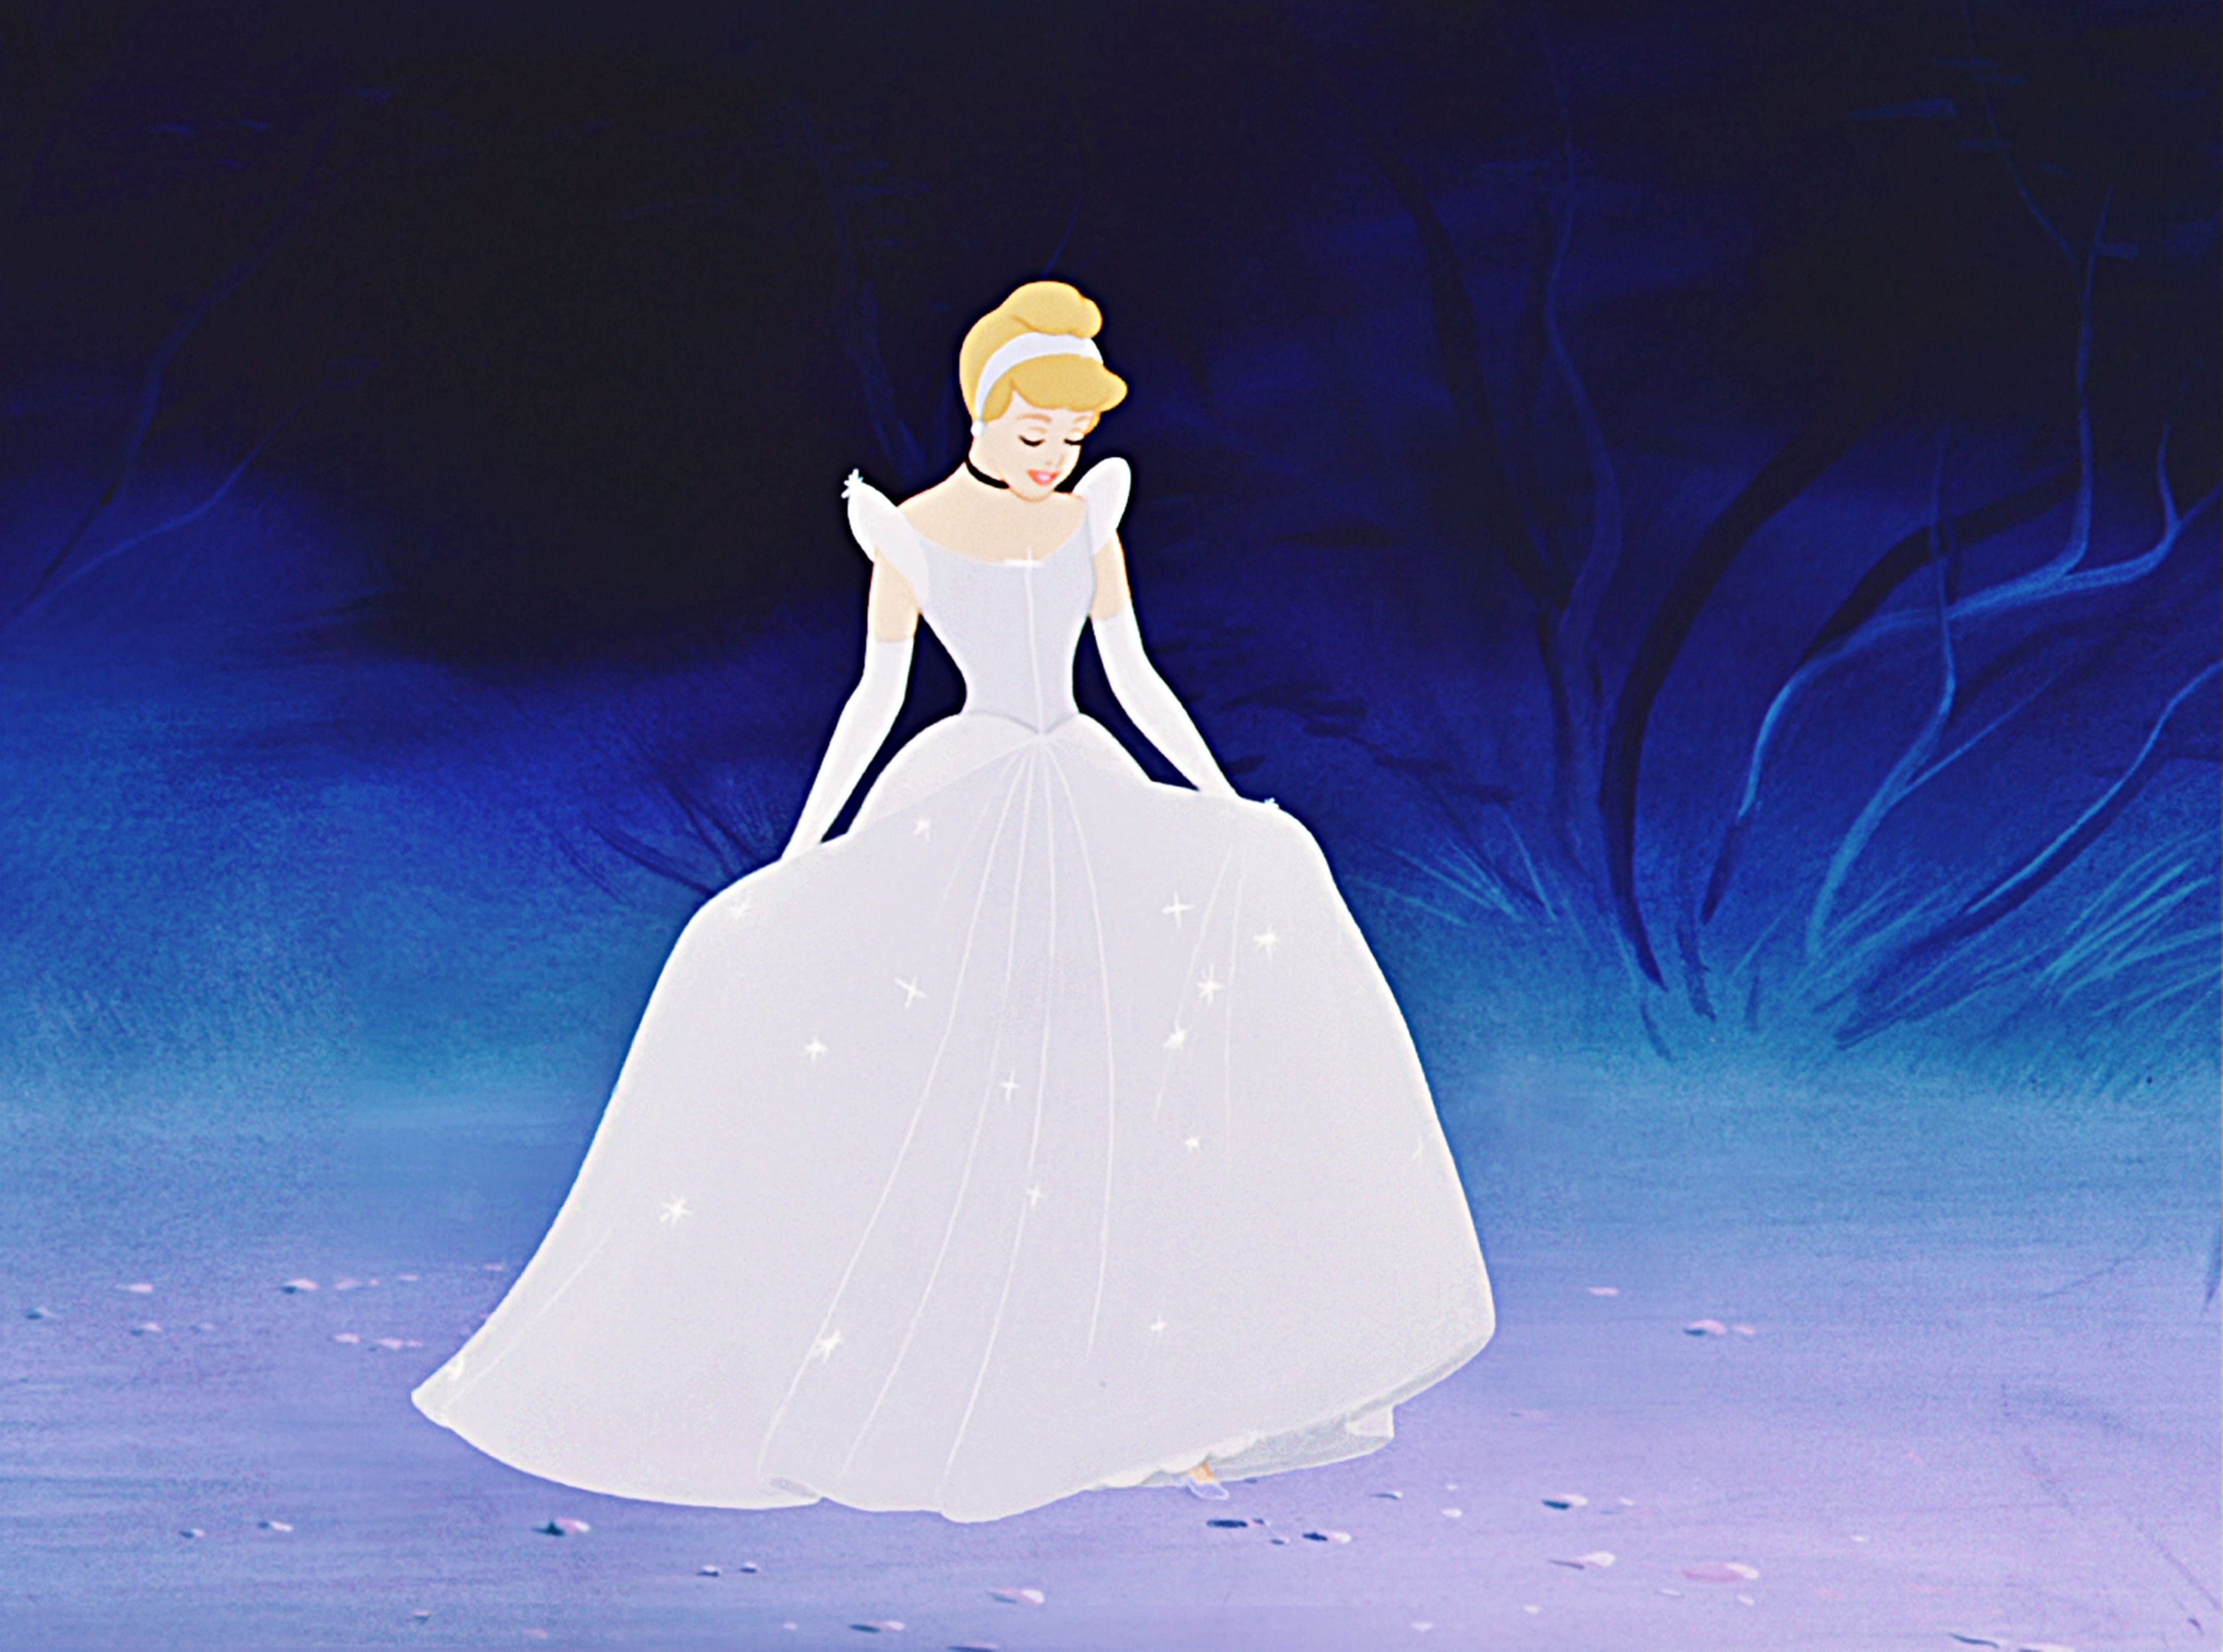 Cinderella am. Золушка Уолт Дисней. Принцессы Дисней Золушка. Дисней Портер принцессы Золушка. Диснеевская принцесса Синдерелла.